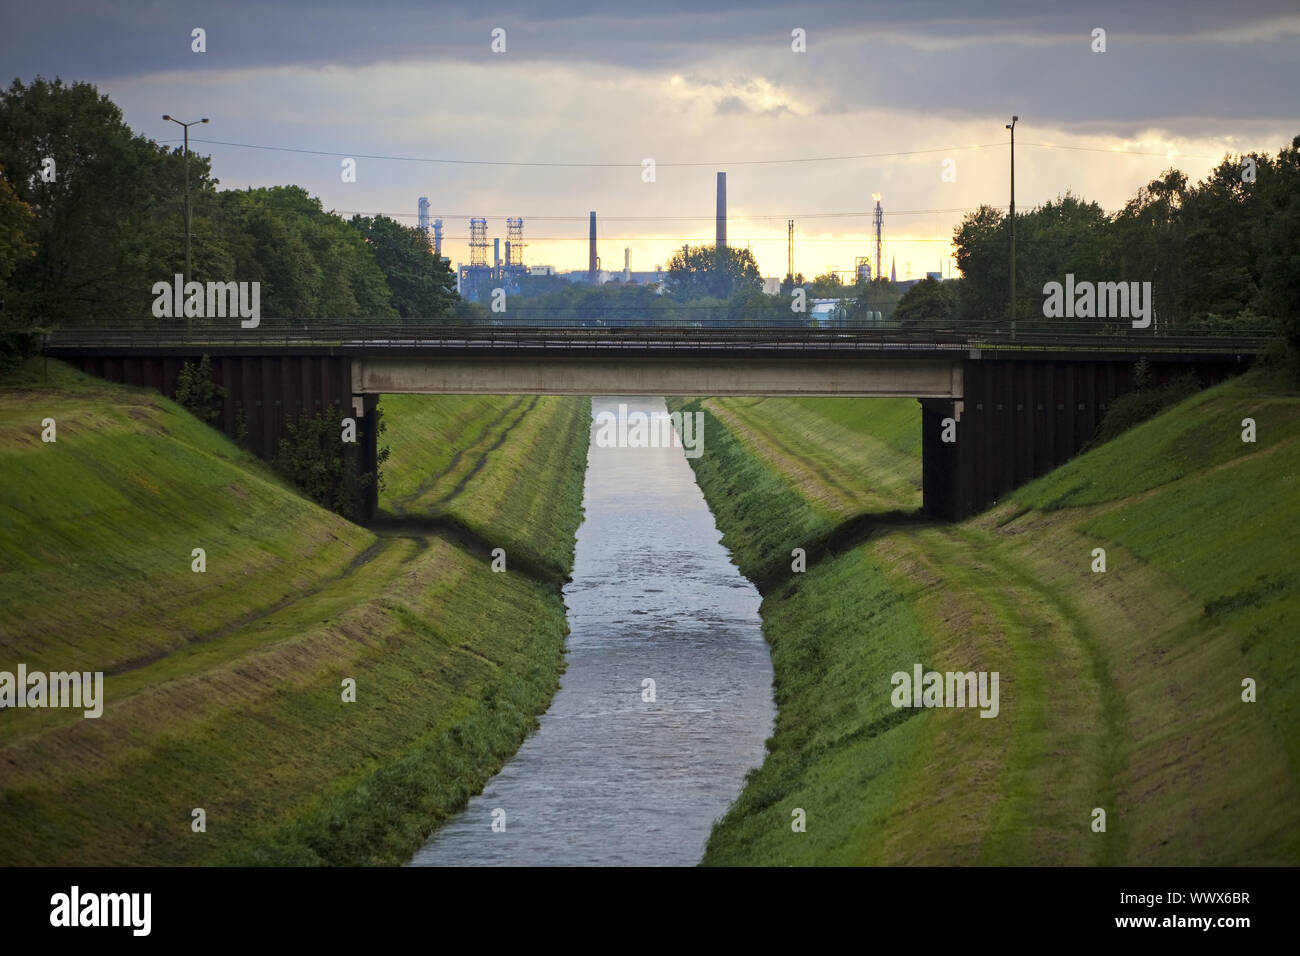 Fiume Emscher con BP raffineria di petrolio in background, Gelsenkirchen, zona della Ruhr, Germania, Europa Foto Stock